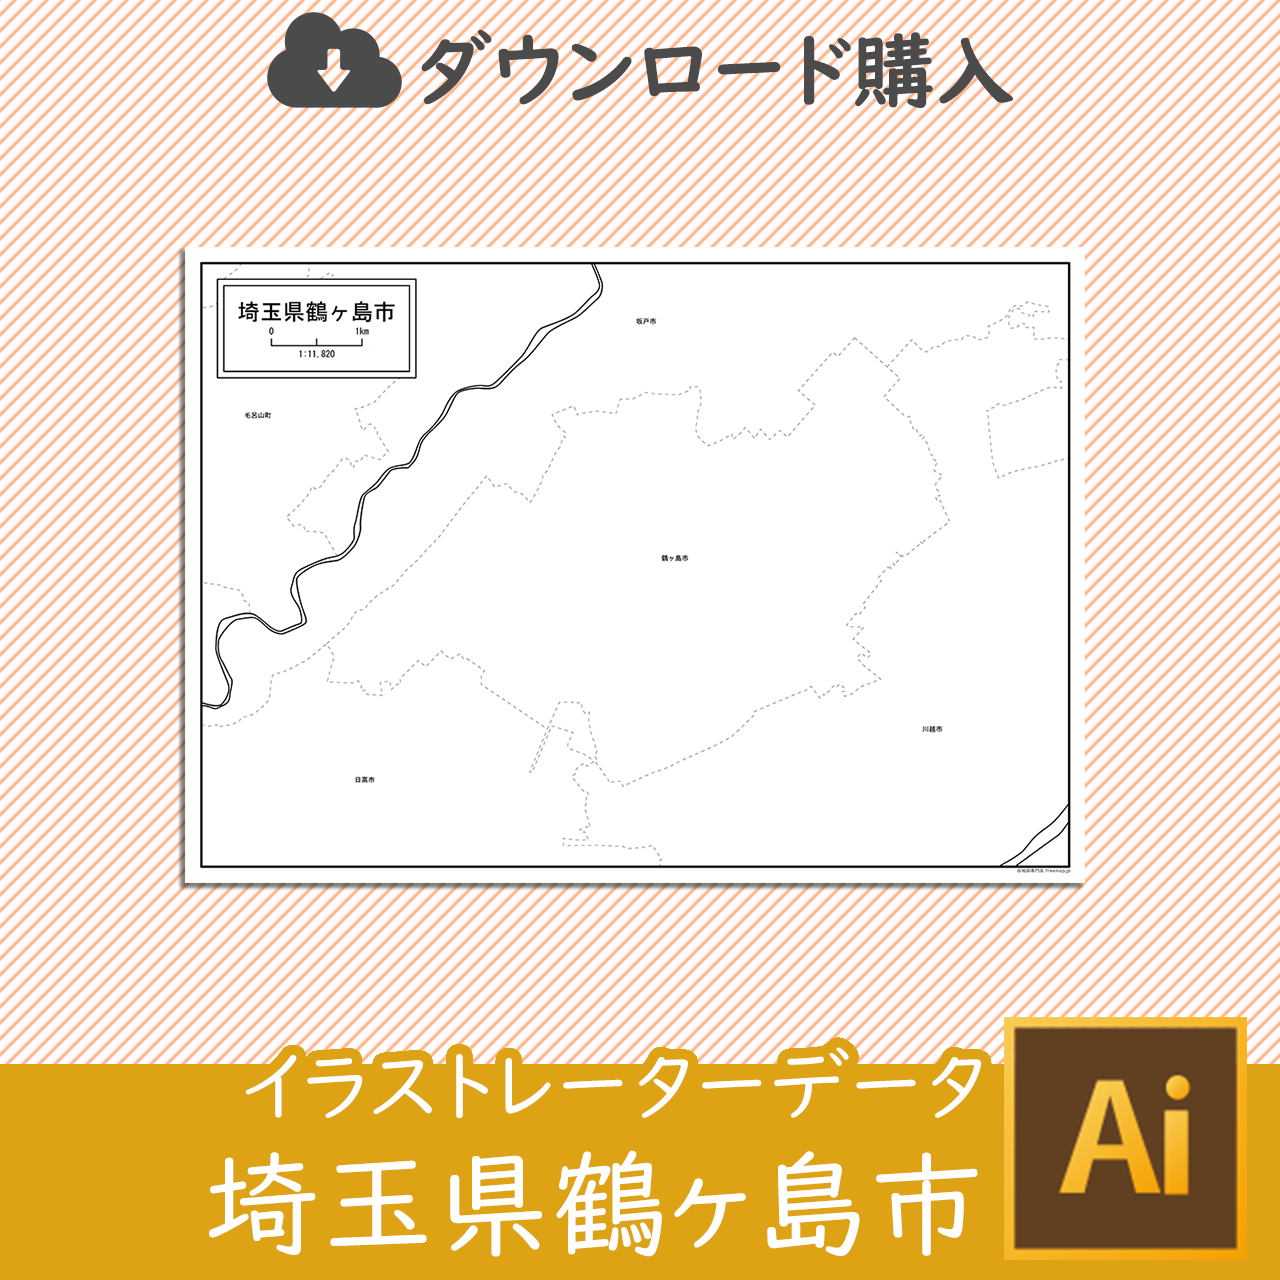 鶴ヶ島市のaiデータのサムネイル画像